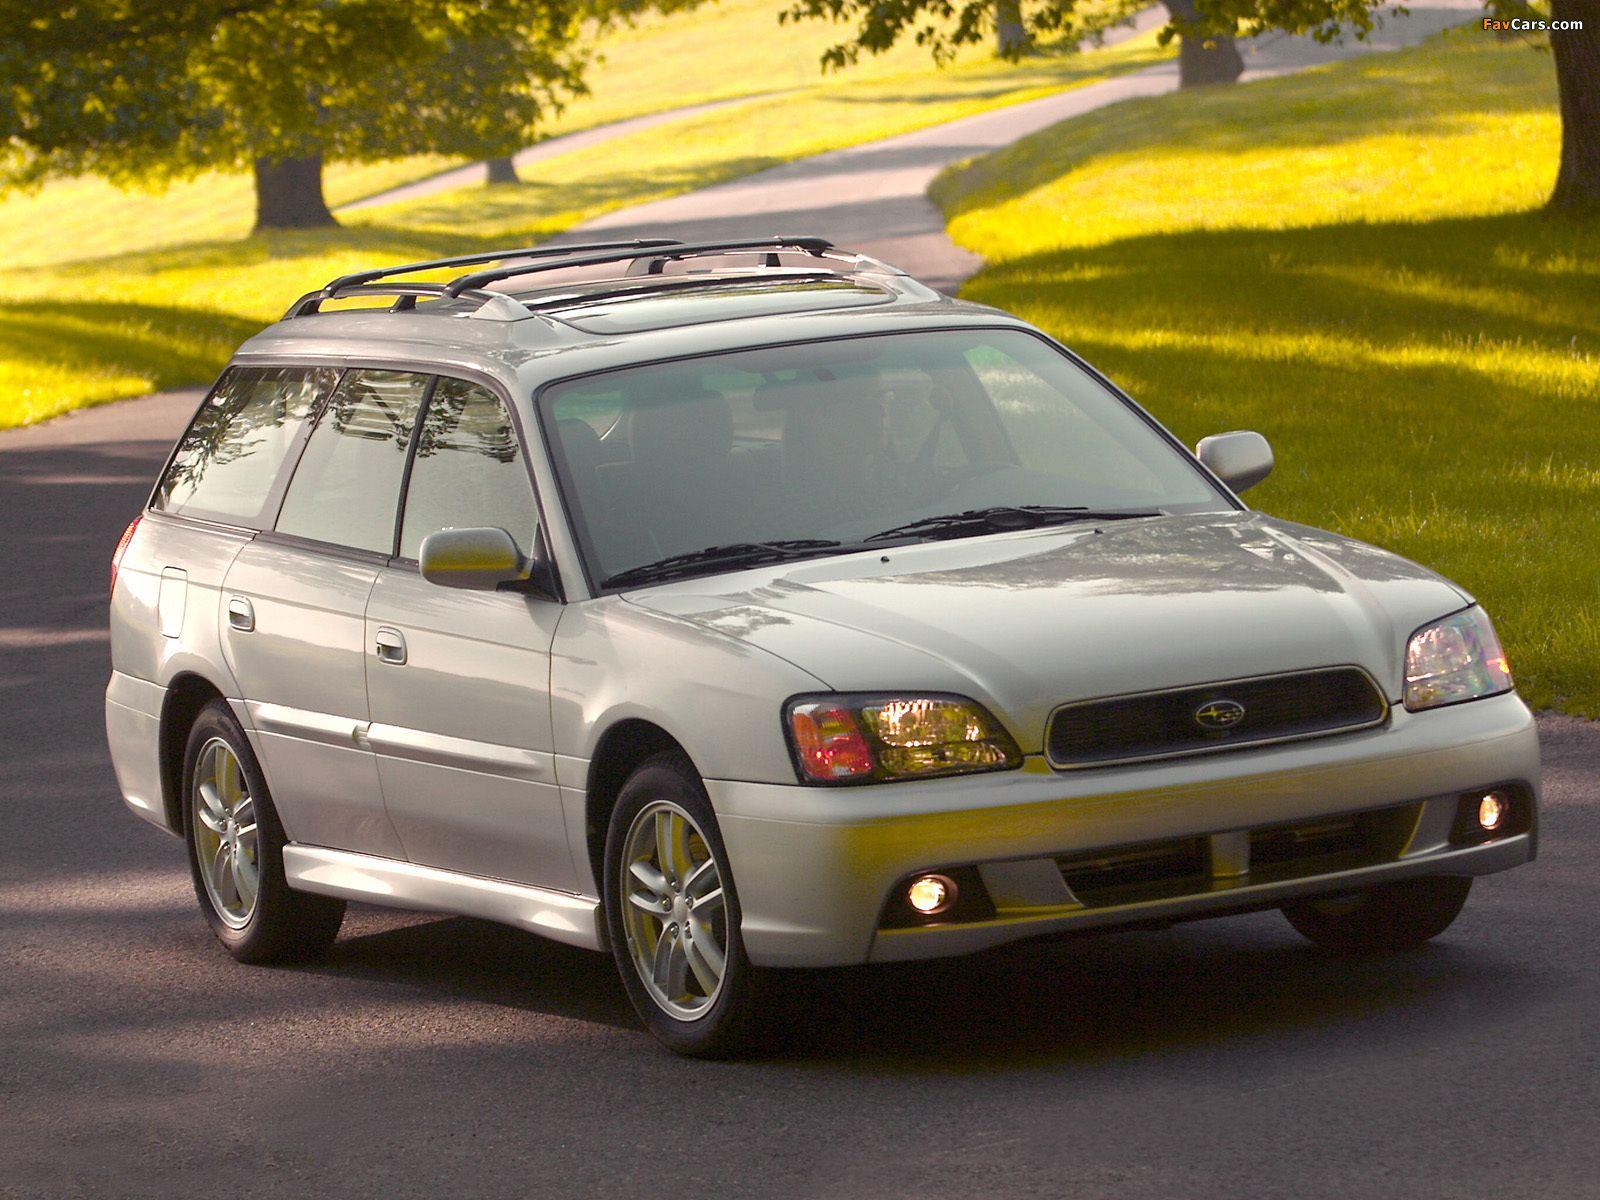 Subaru legacy 2003. 1998 Subaru Legacy Wagon. Subaru Legacy Outback 2003. Subaru Legacy 2.5 1998.